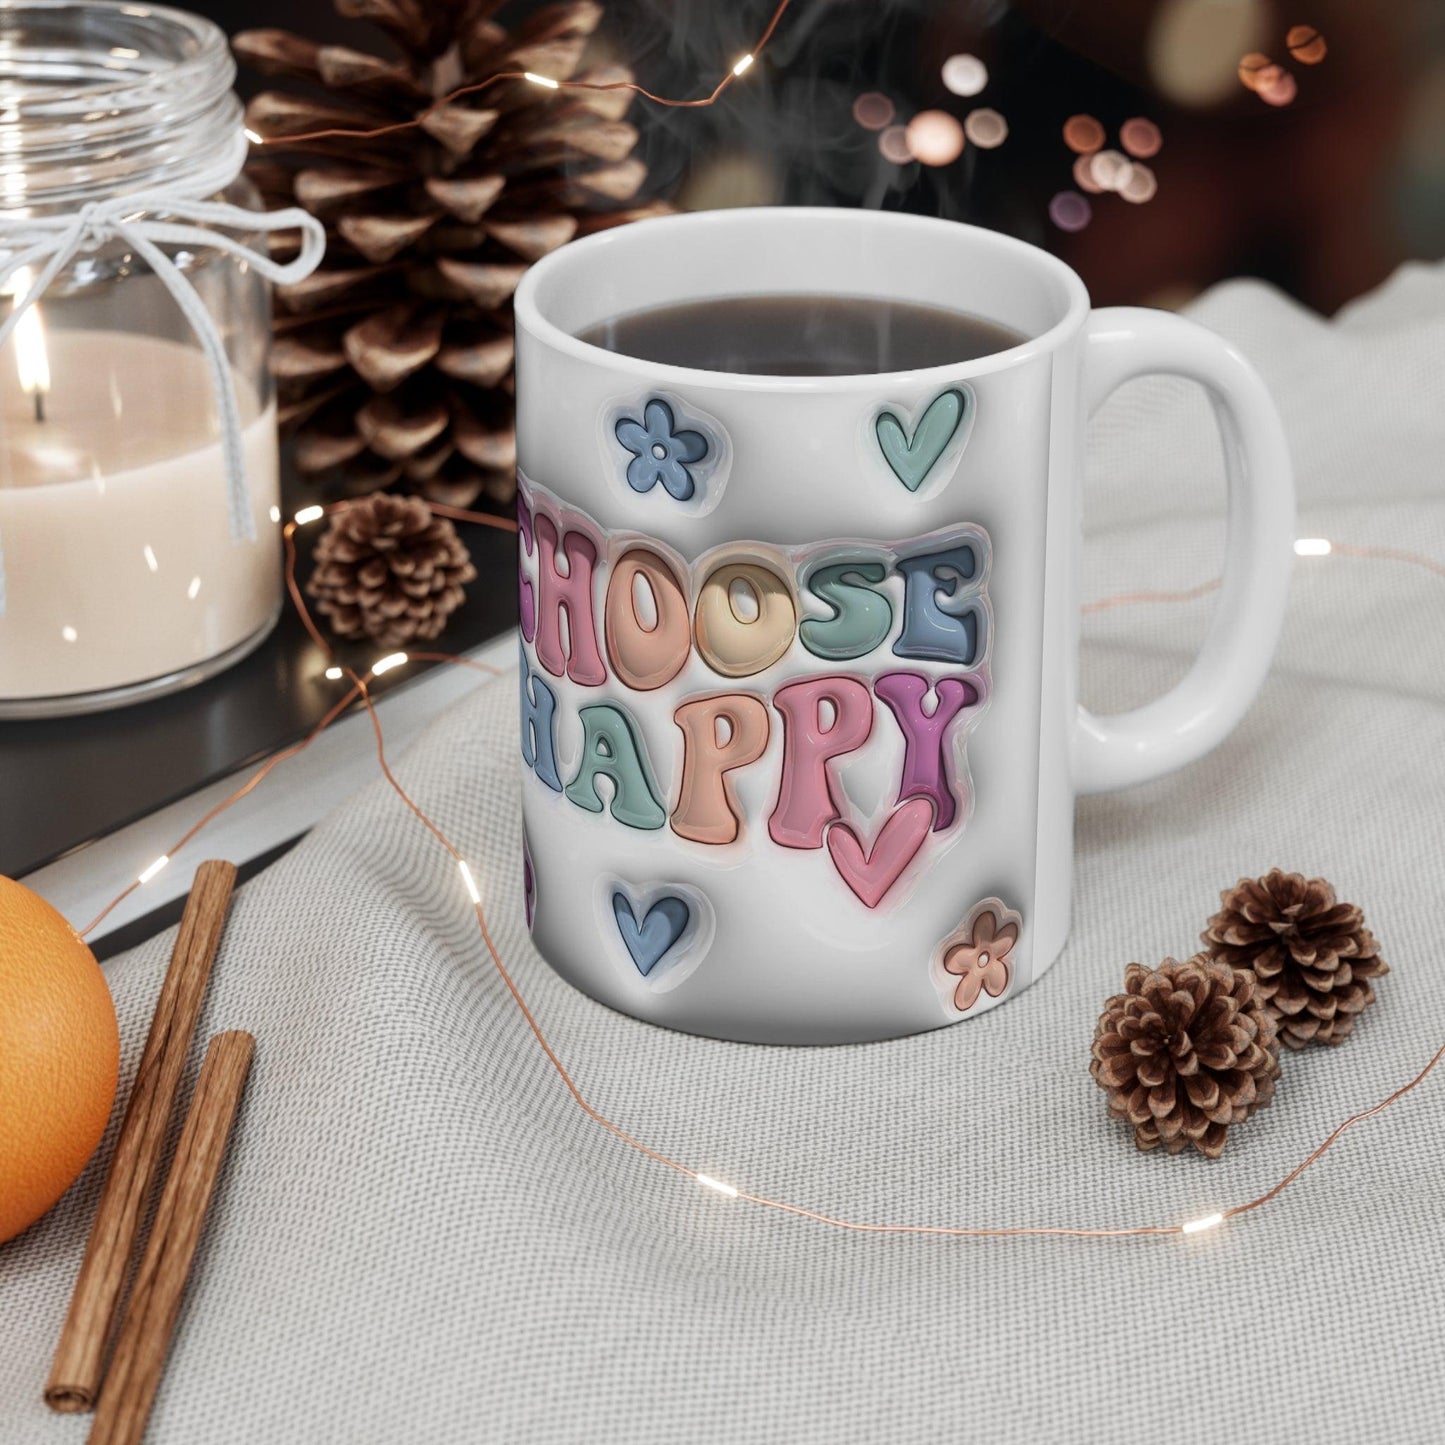 Choose Happy Ceramic Mug 11oz